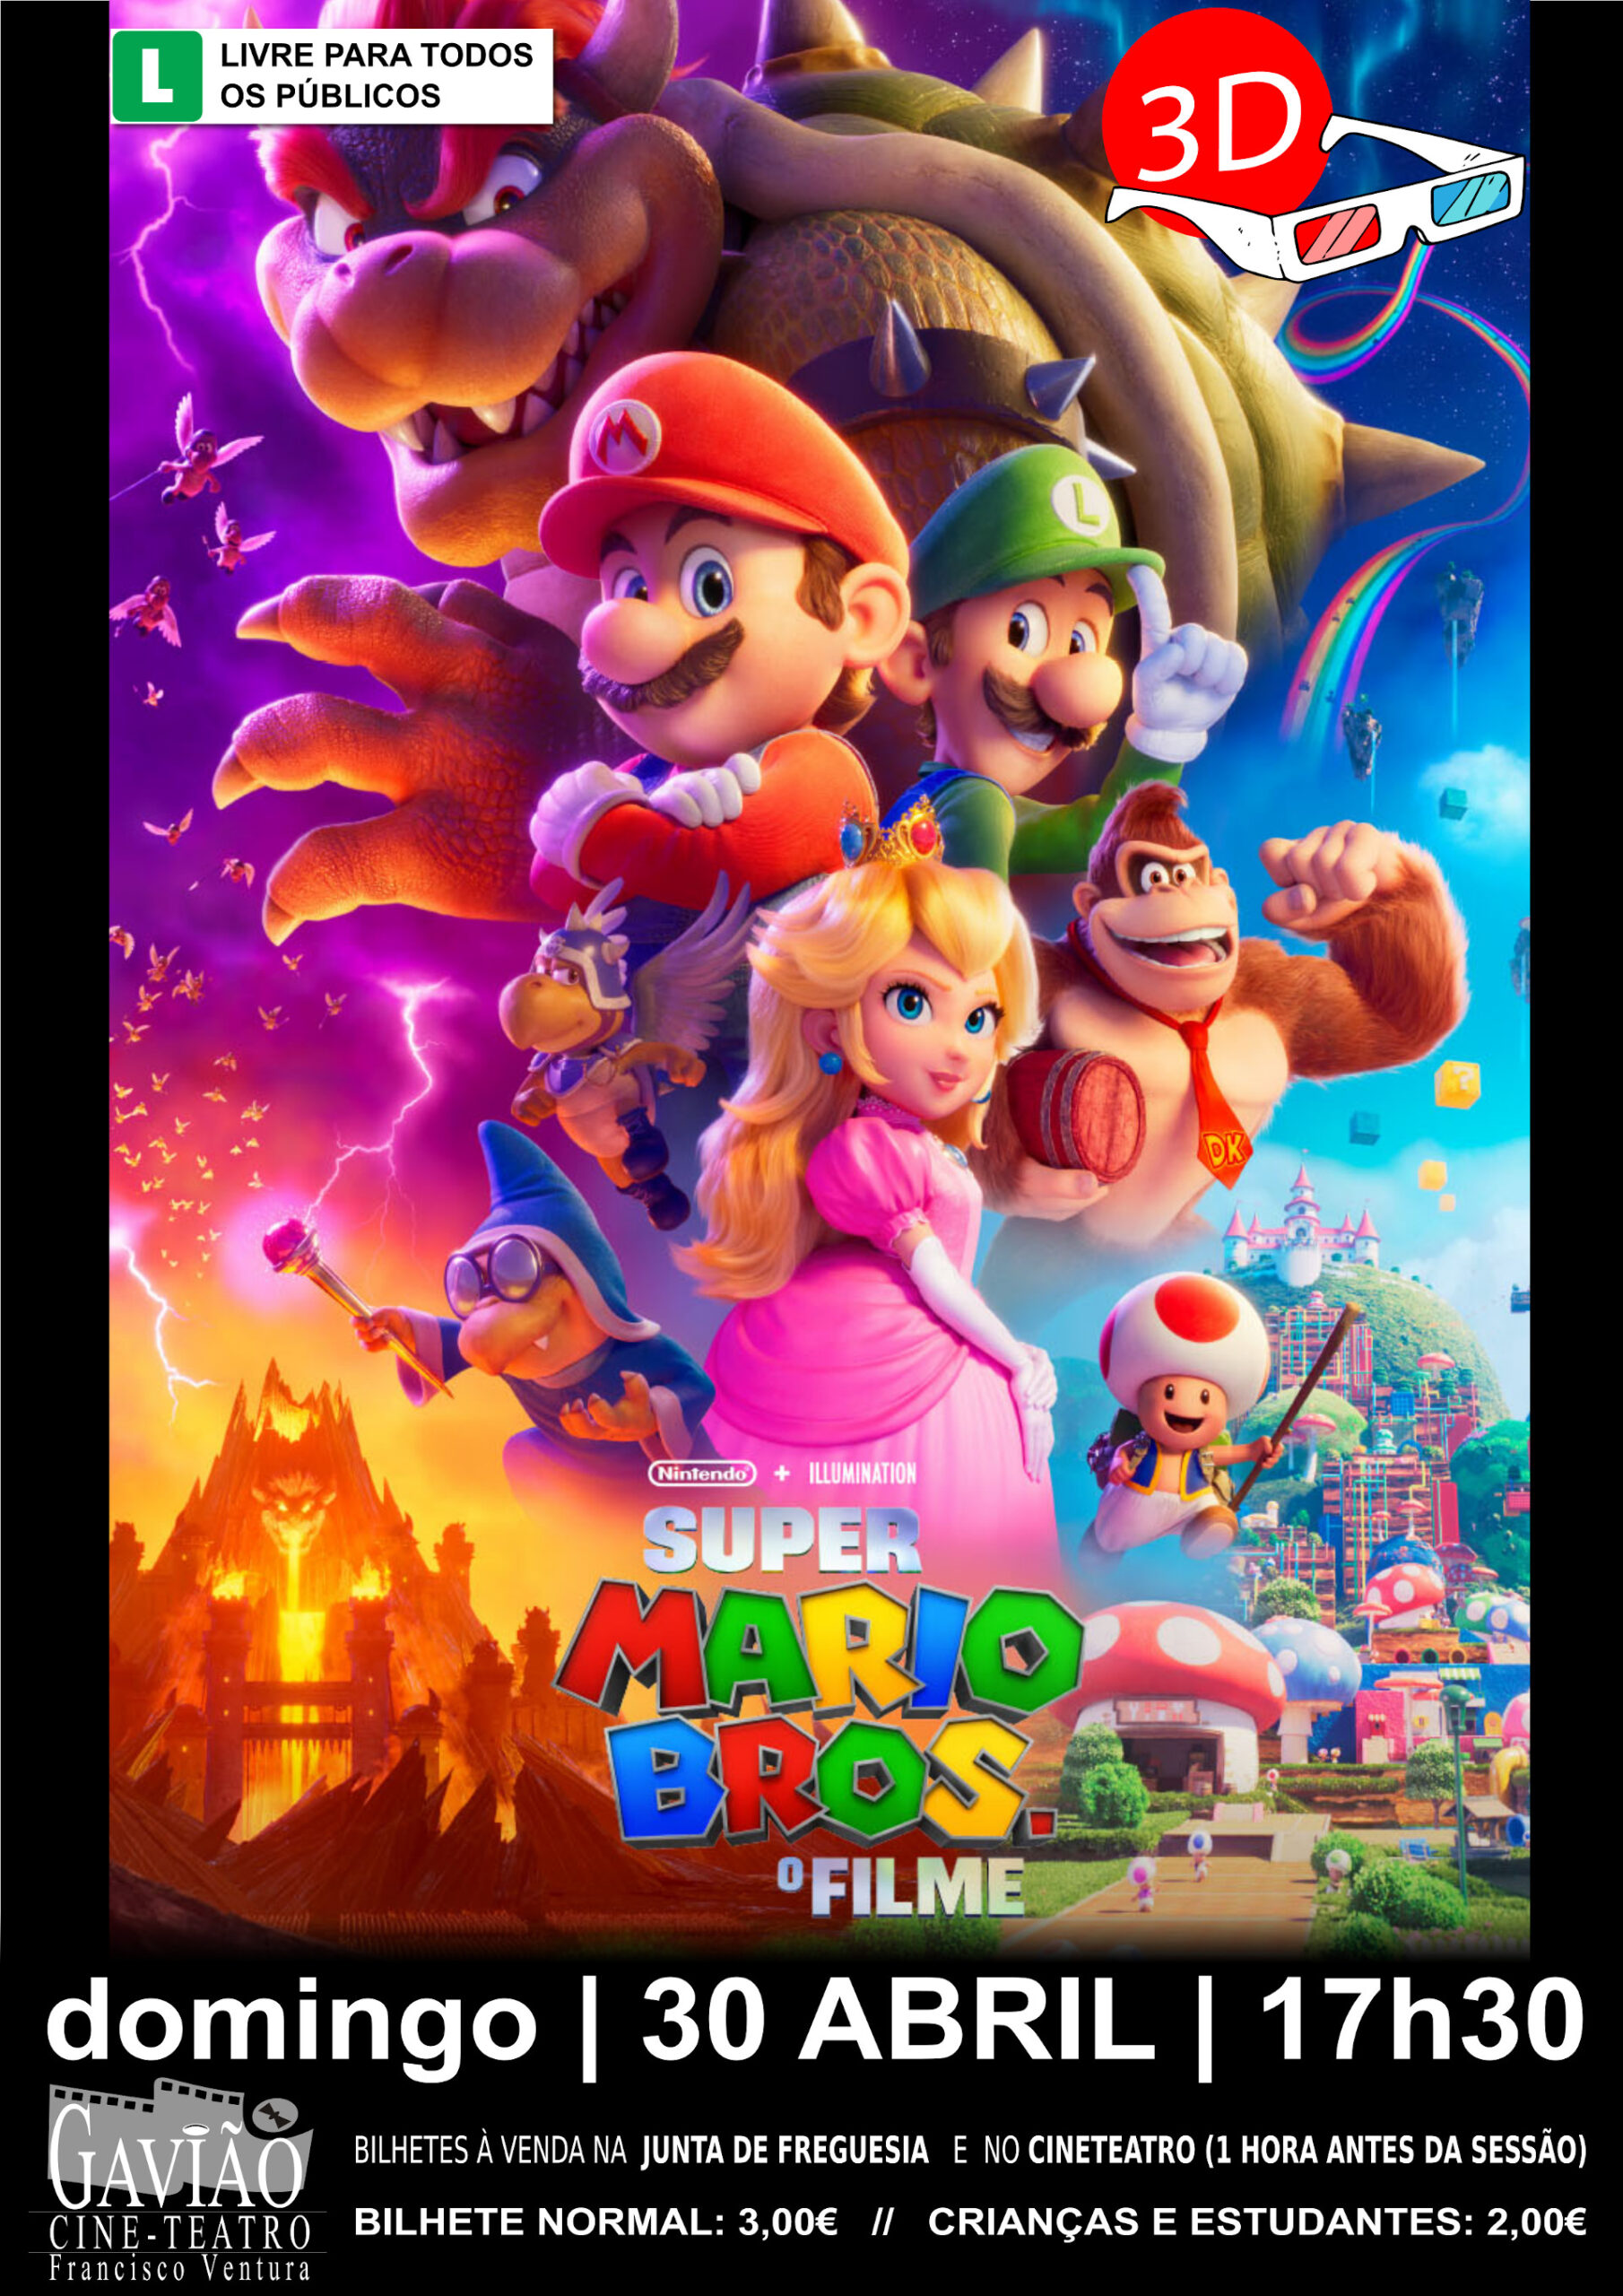 Super Mario World 2022 Uma Aventura Gamer no Super Nintendo 